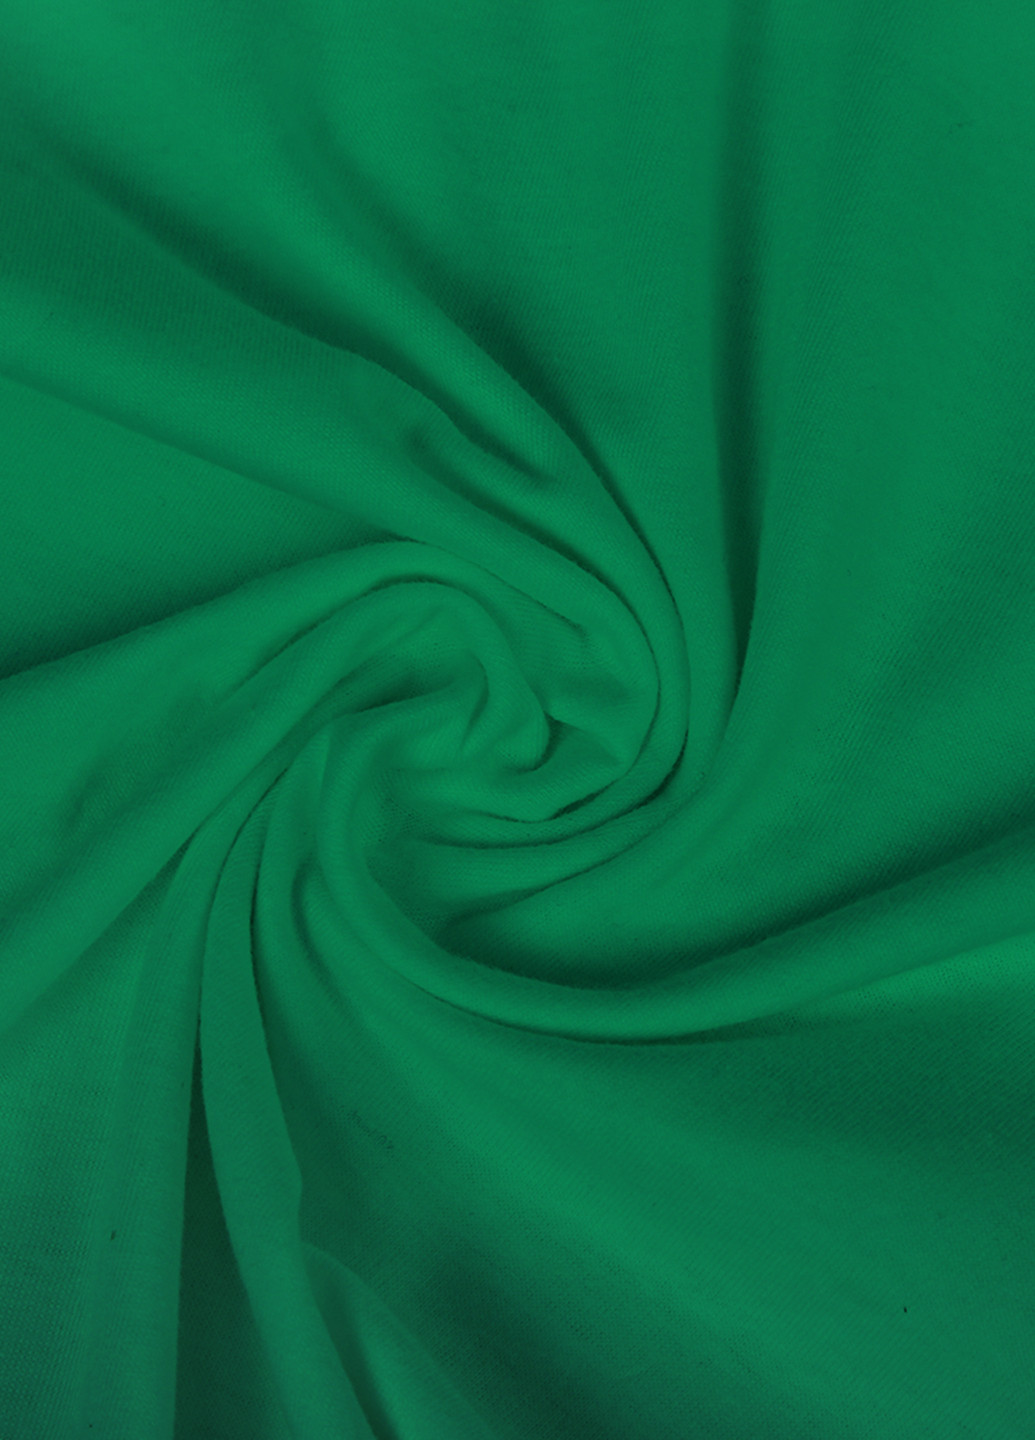 Зелена демісезонна футболка дитяча робокар полі (robocar poli) (9224-1617) MobiPrint